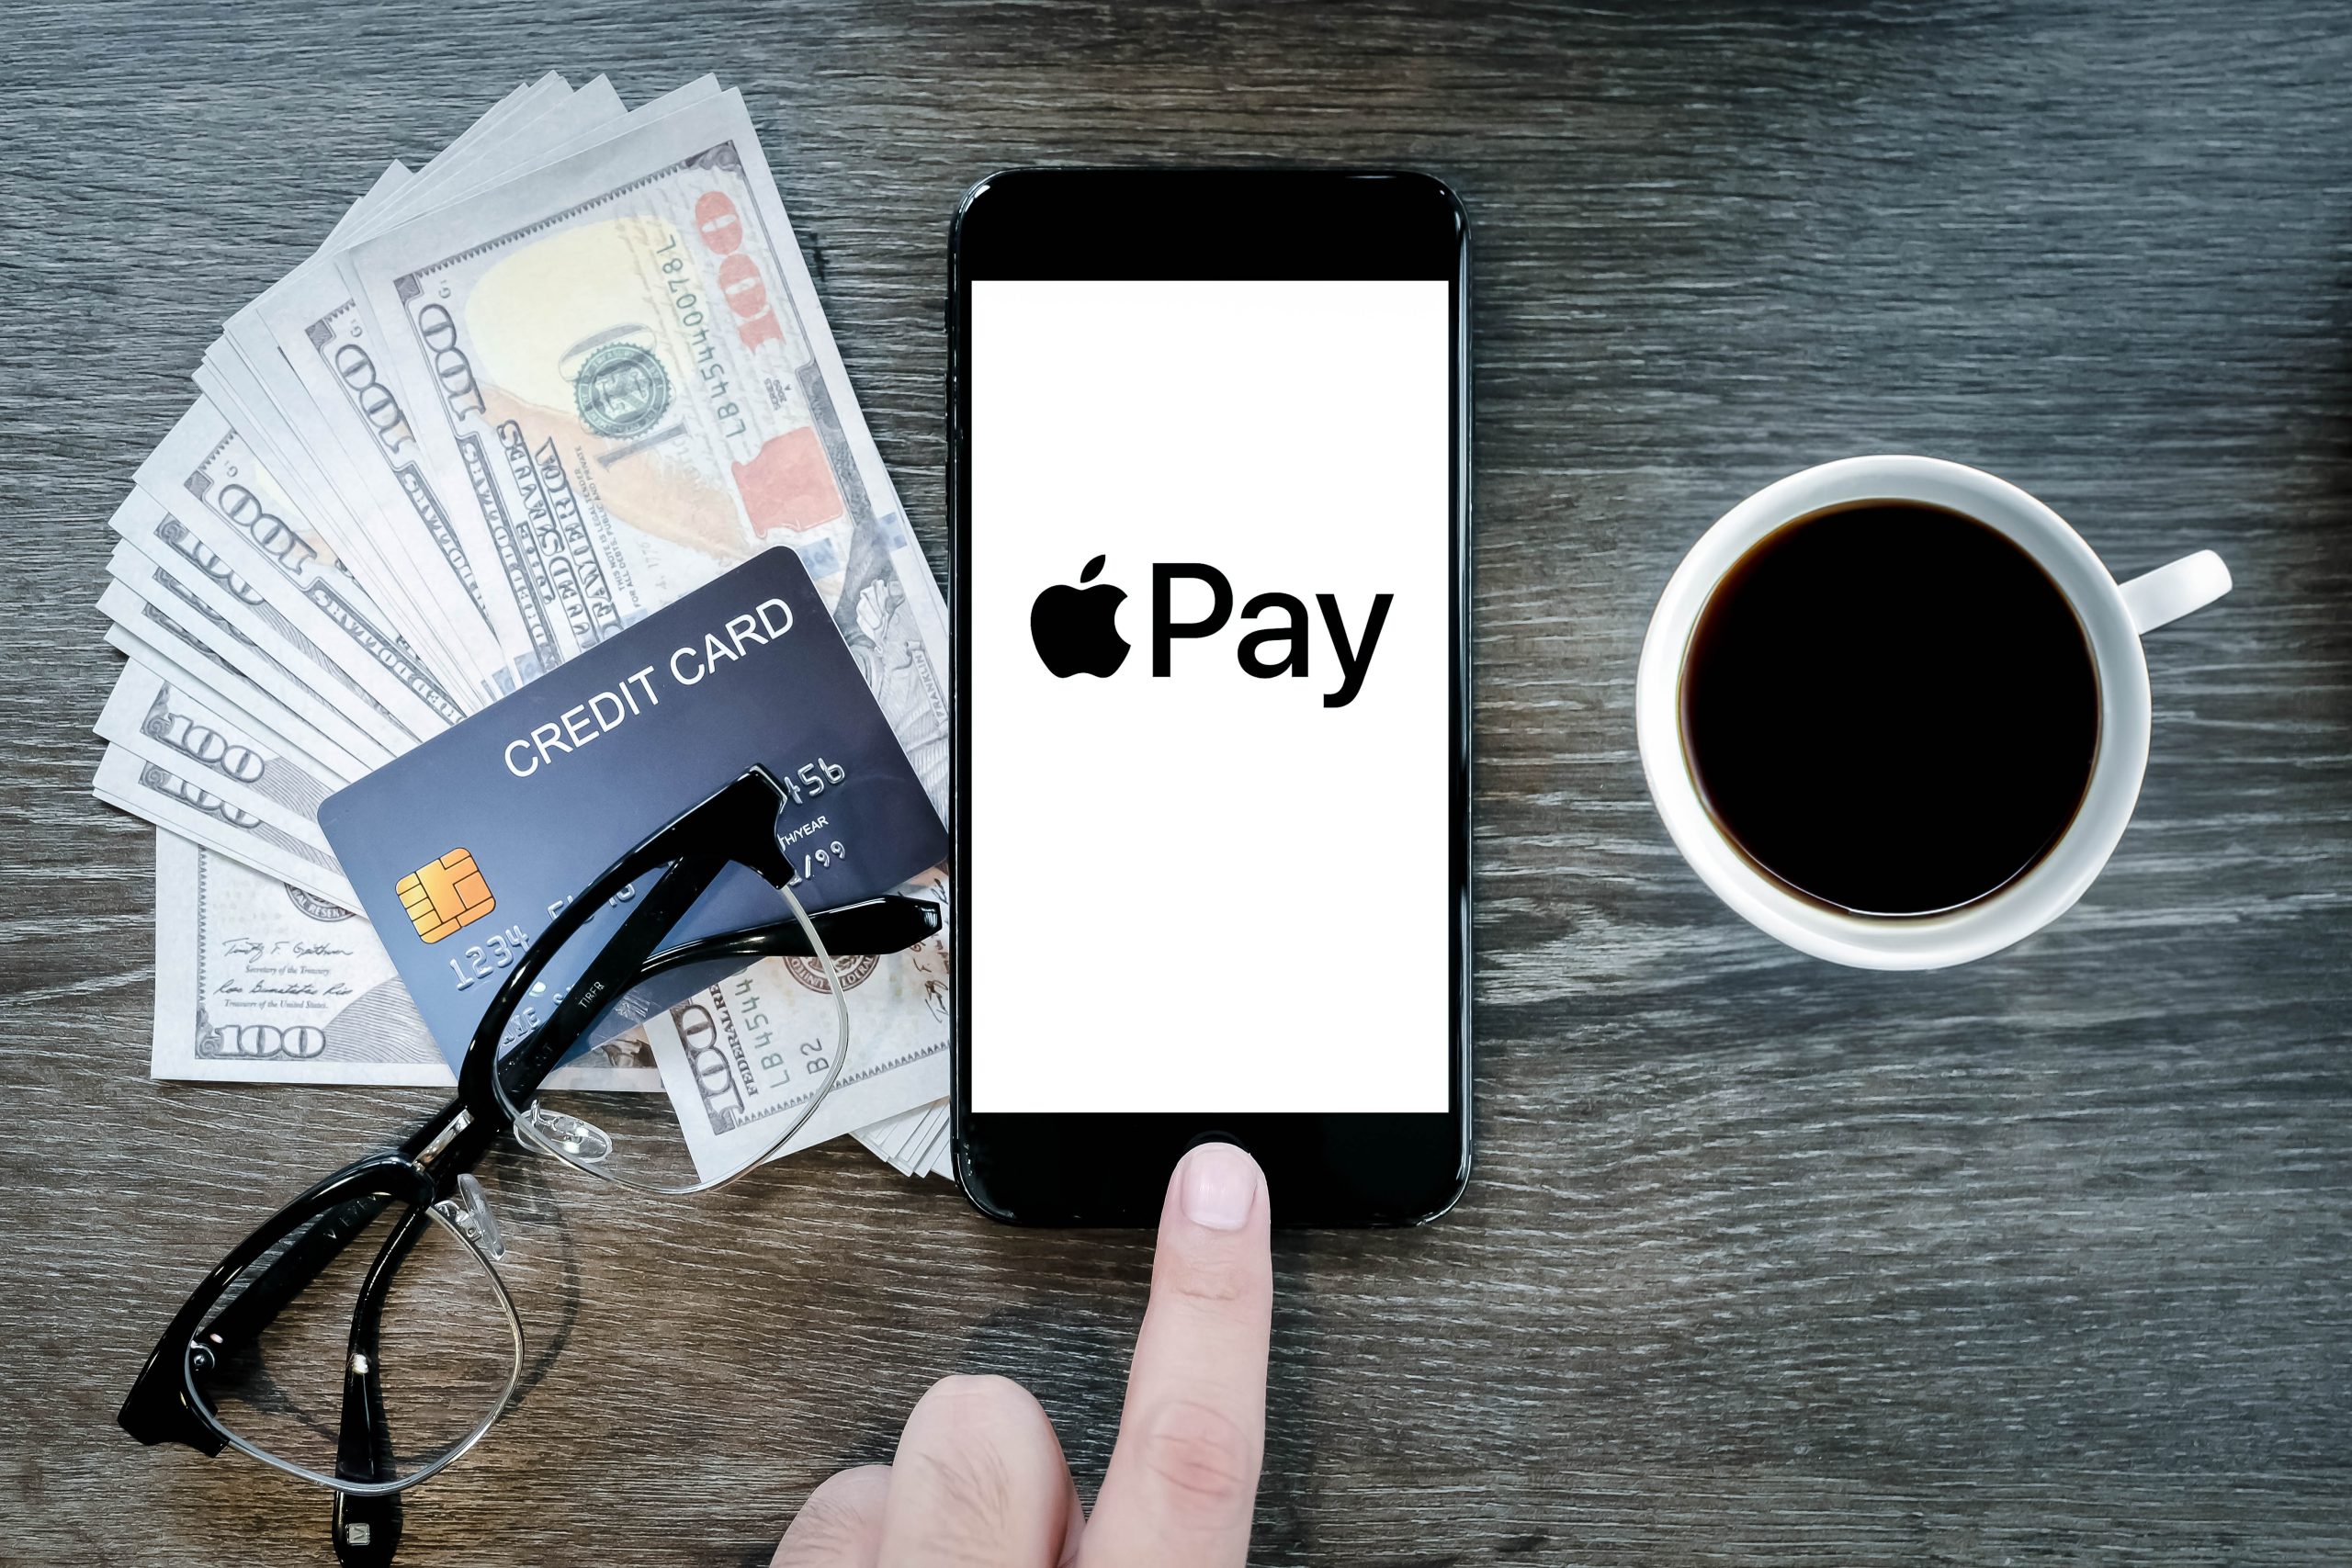 Imagem mostra tela do Apple Pay aberta em um smartphone, próxima a um copo com café, um par de óculos, notas variadas de dólares e um cartão de crédito